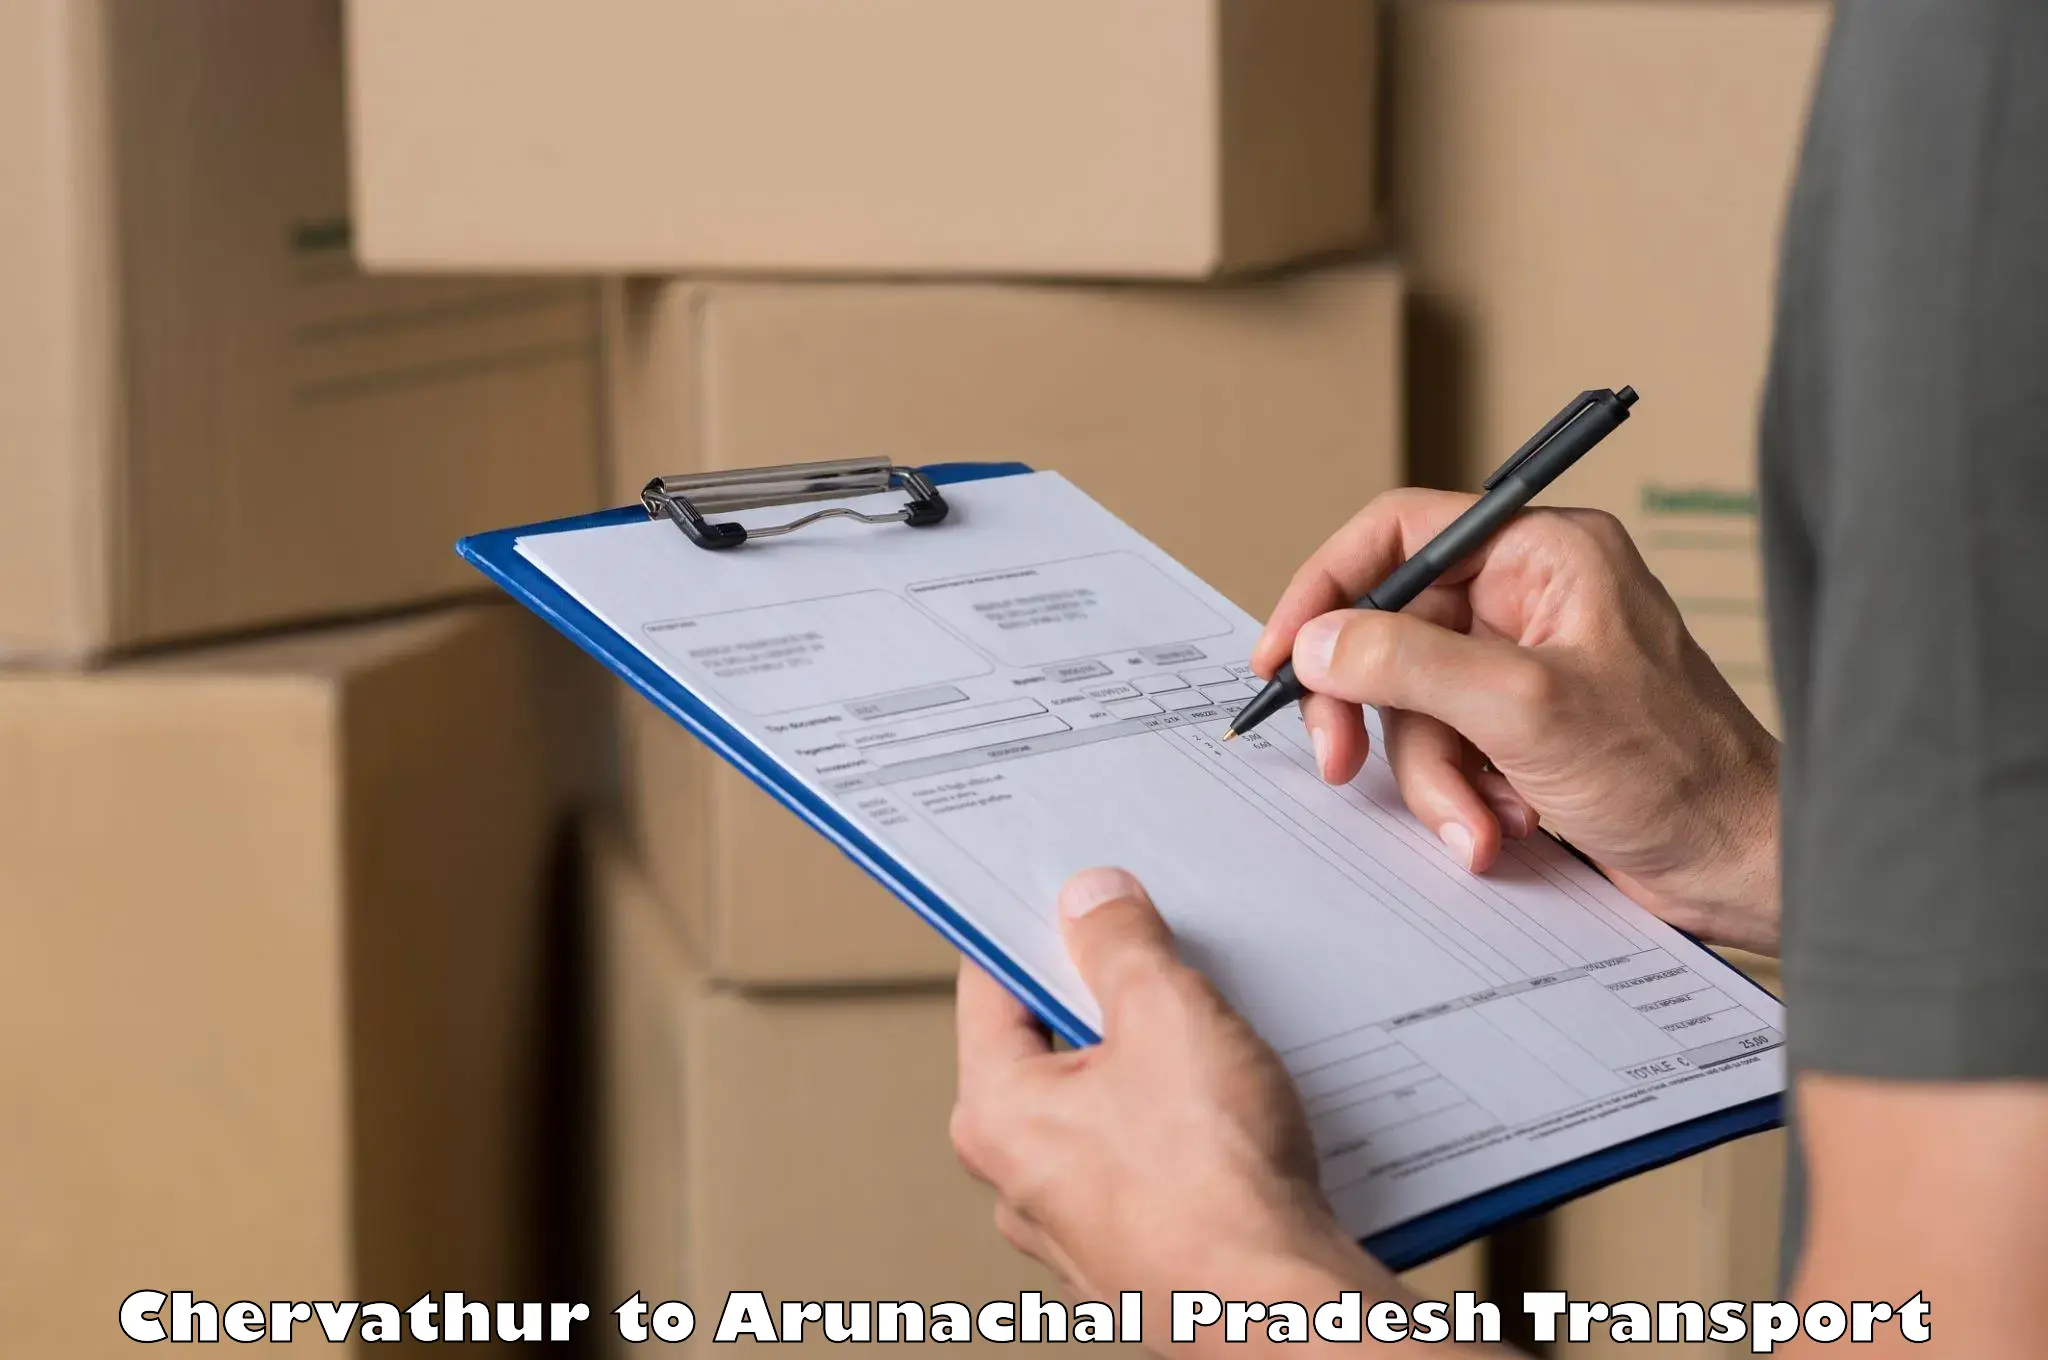 Online transport booking Chervathur to Arunachal Pradesh